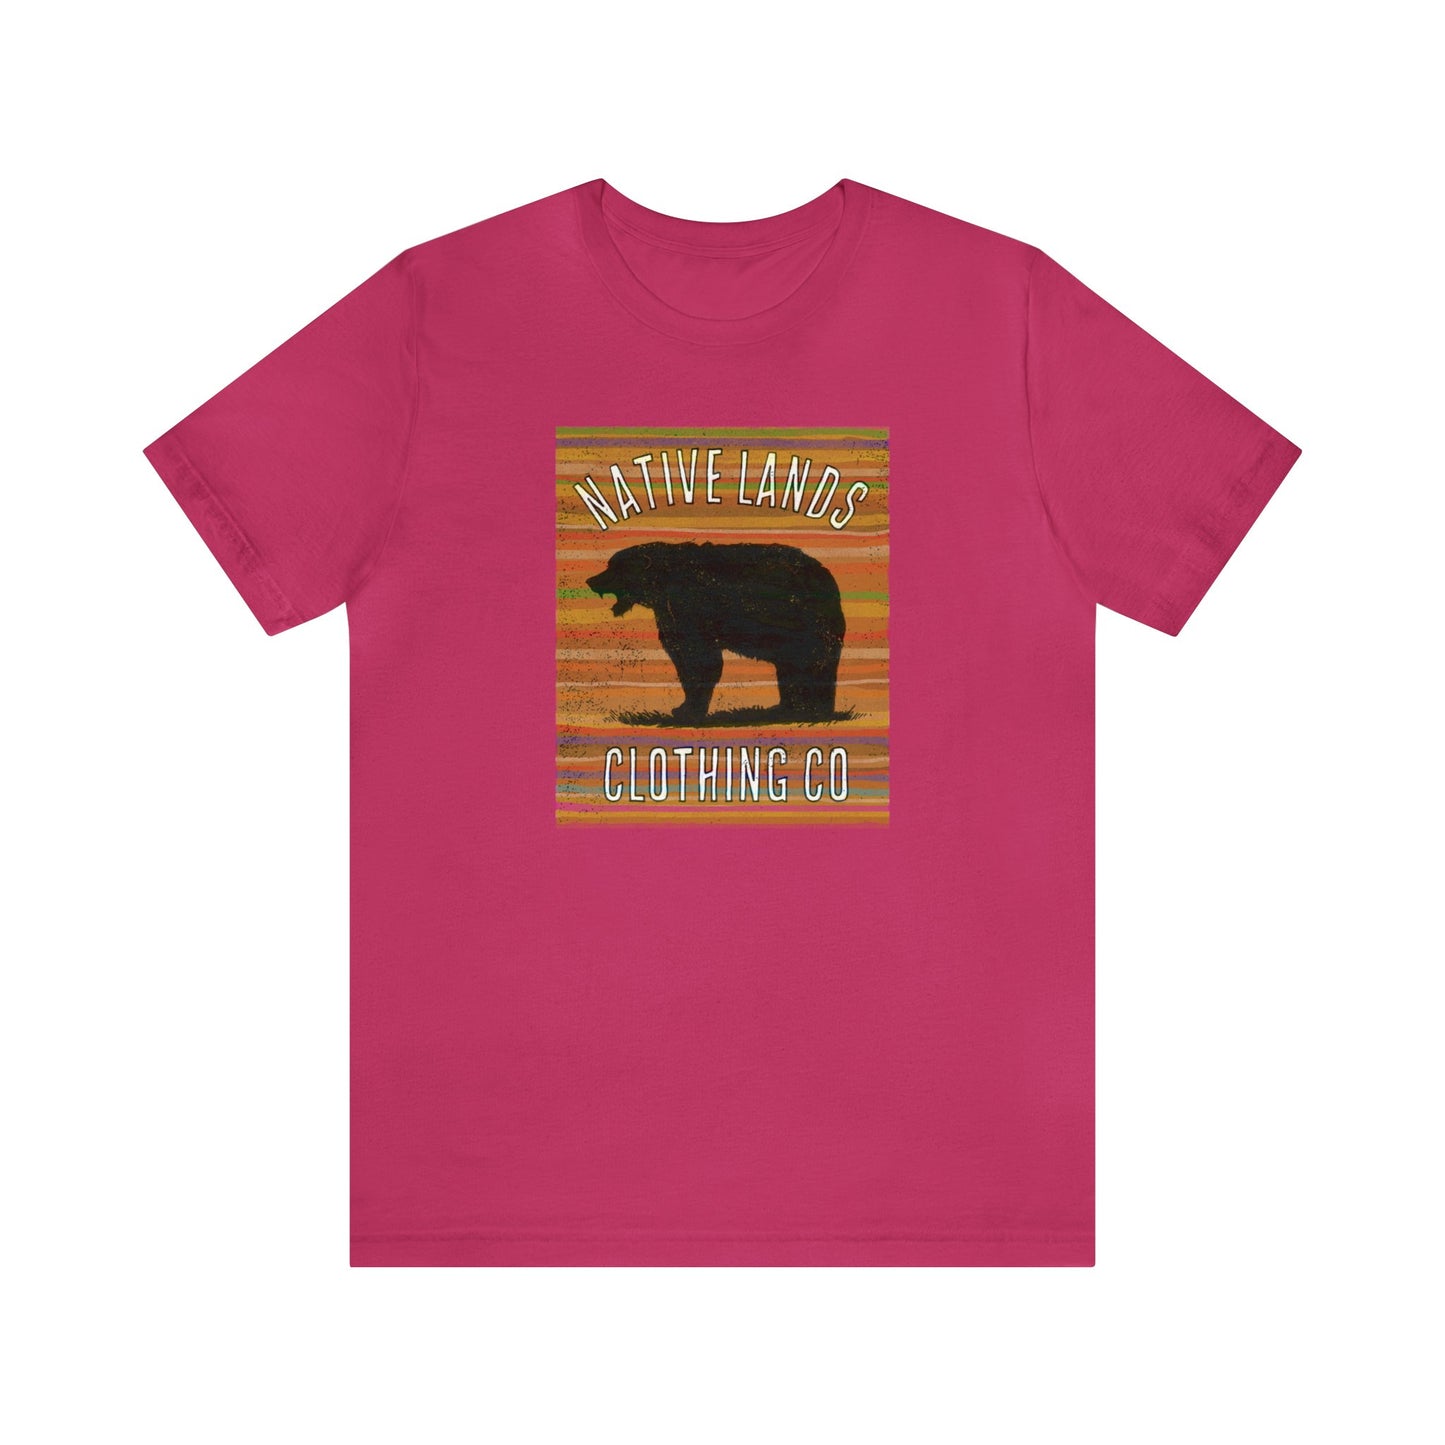 熊咆哮衬衫地球棉美洲原住民